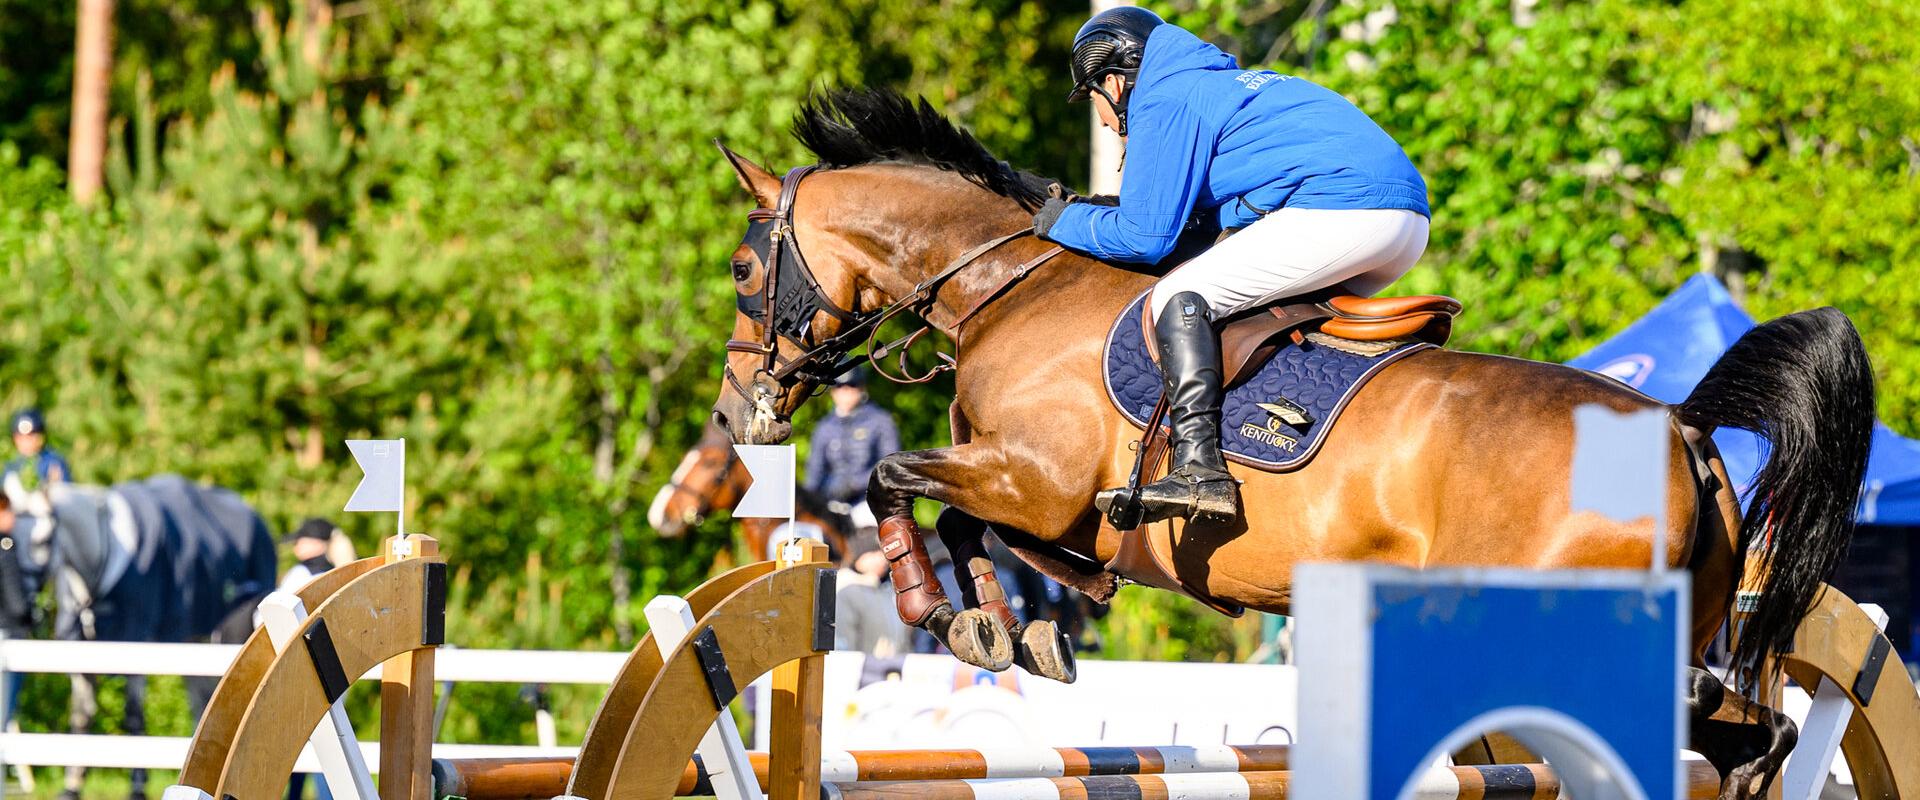 CHI – Concour Hippique Internationale – steht im internationalen Reitsport für einen Wettkampf, wo internationale Wettbewerbe in verschiedenen Pferdes